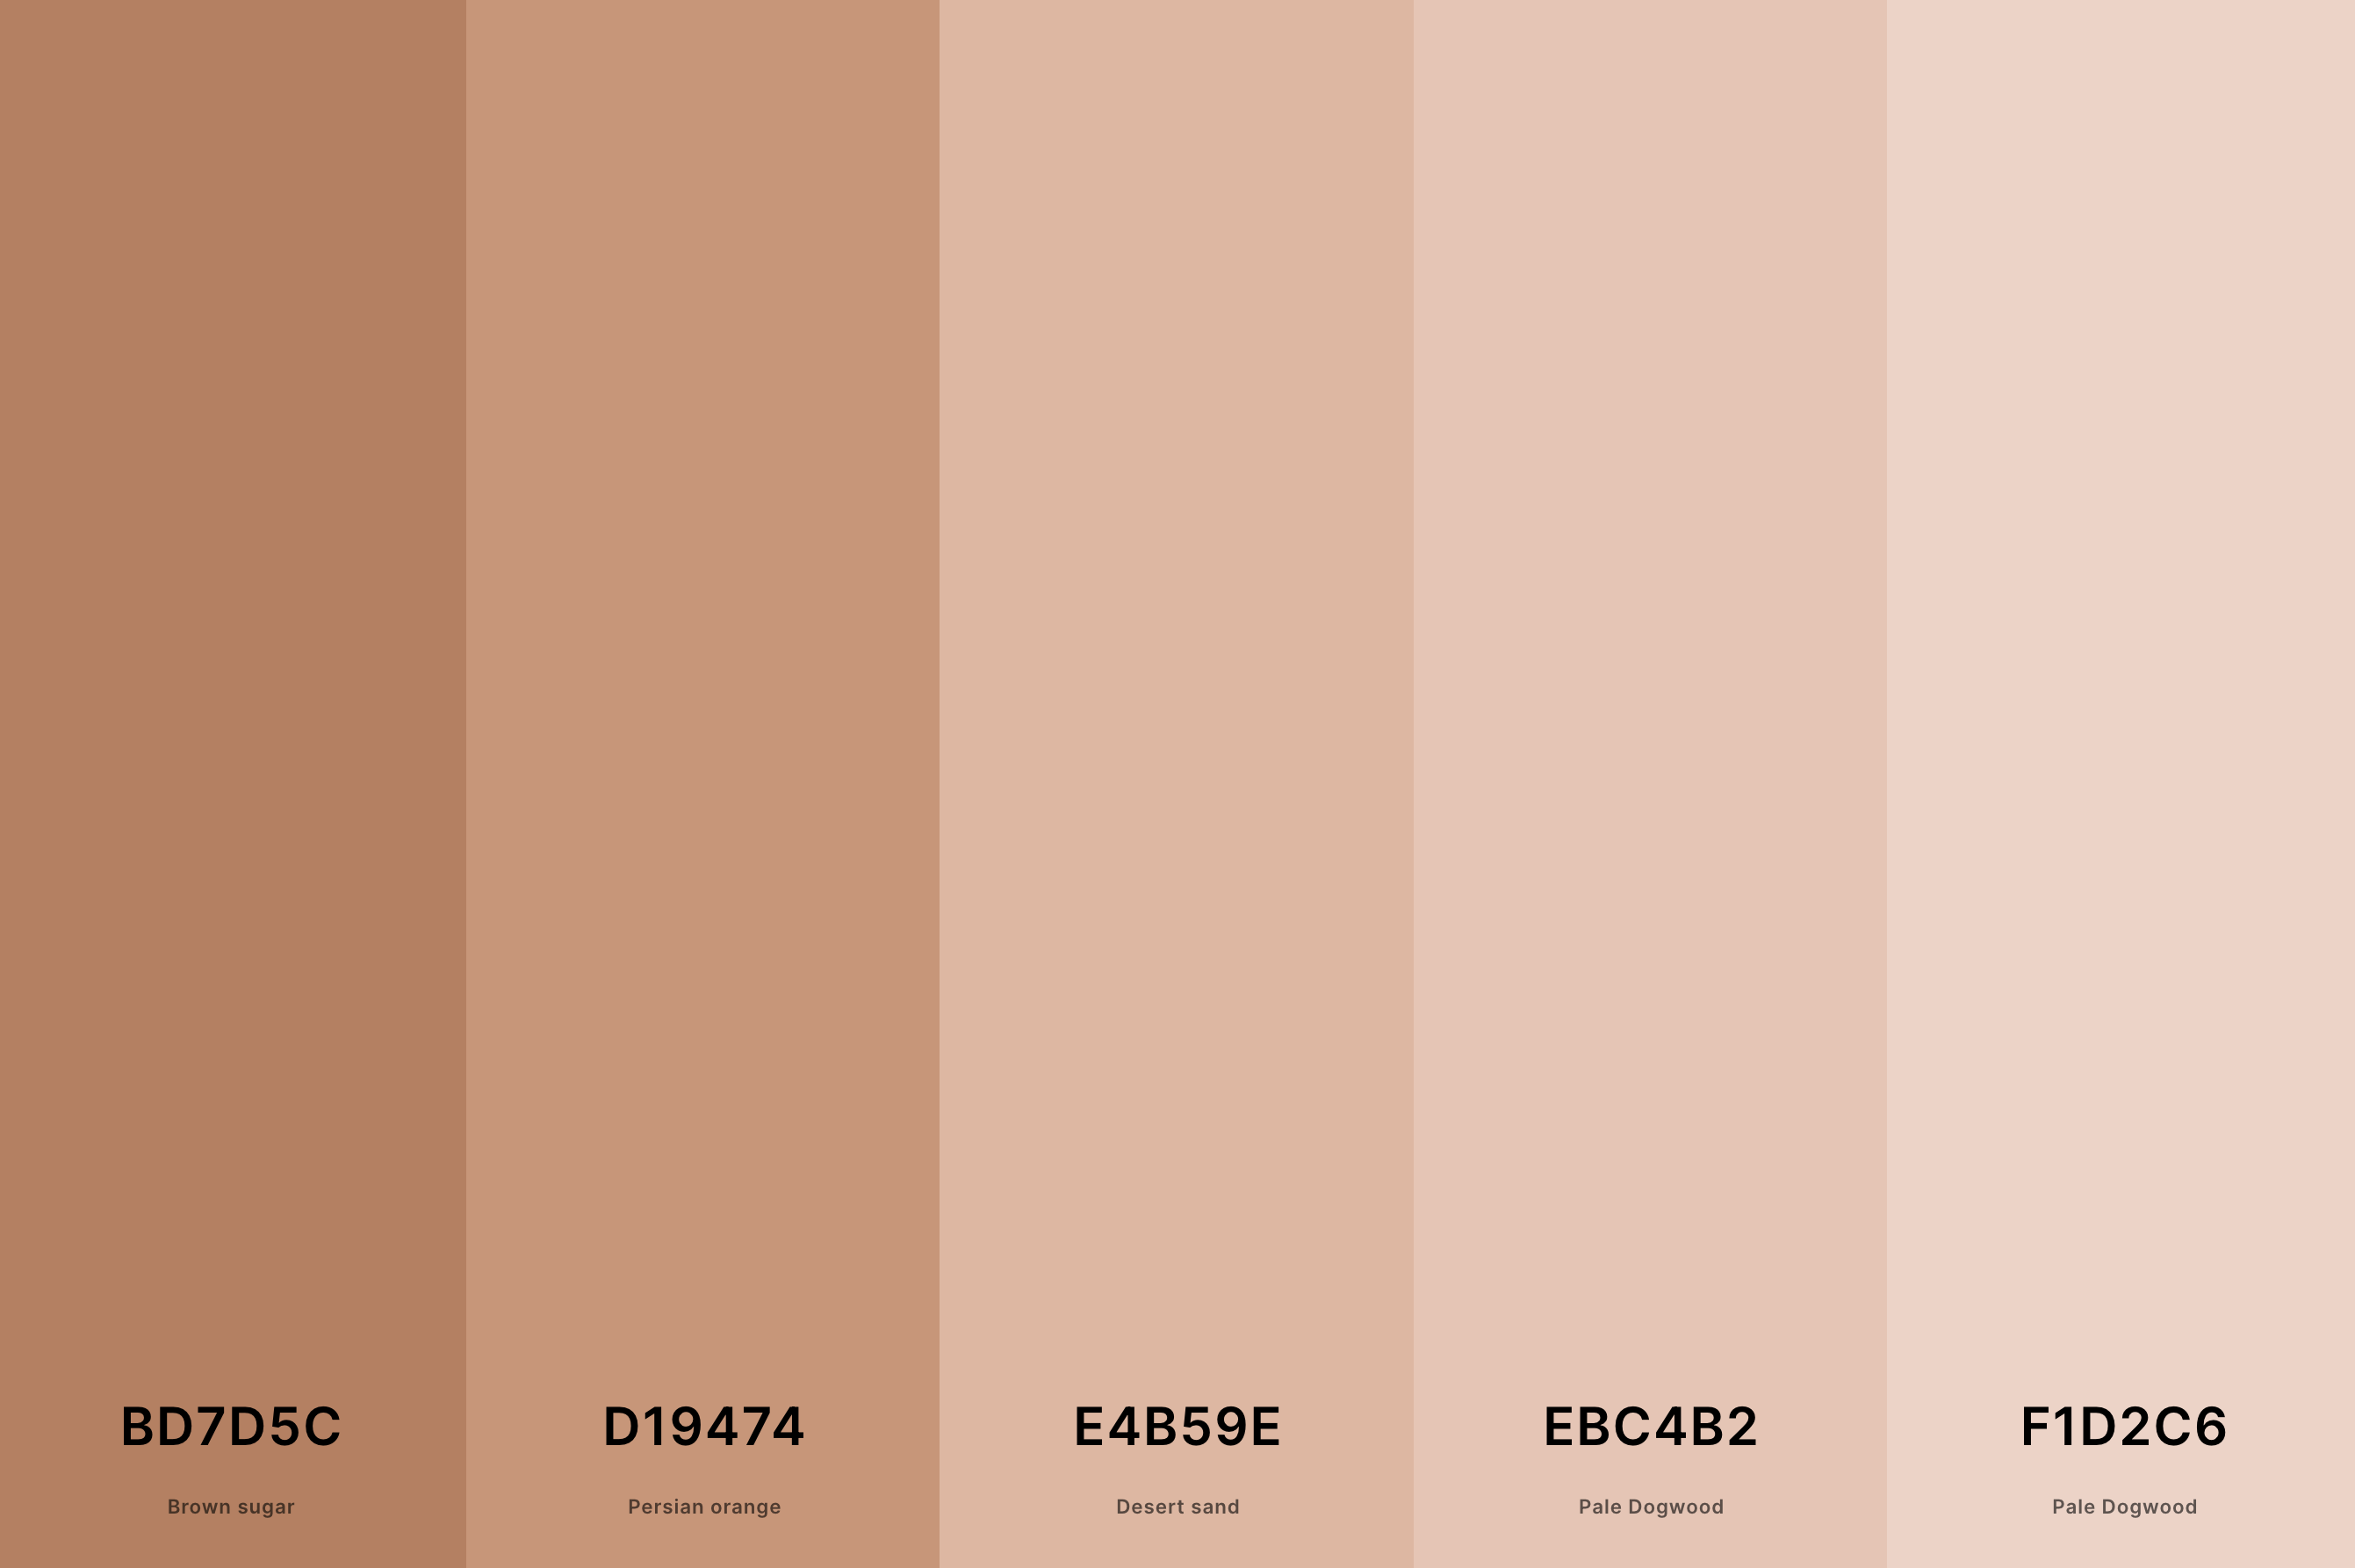 6. Neutral Skin Tone Color Palette Color Palette with Brown Sugar (Hex #BD7D5C) + Persian Orange (Hex #D19474) + Desert Sand (Hex #E4B59E) + Pale Dogwood (Hex #EBC4B2) + Pale Dogwood (Hex #F1D2C6) Color Palette with Hex Codes